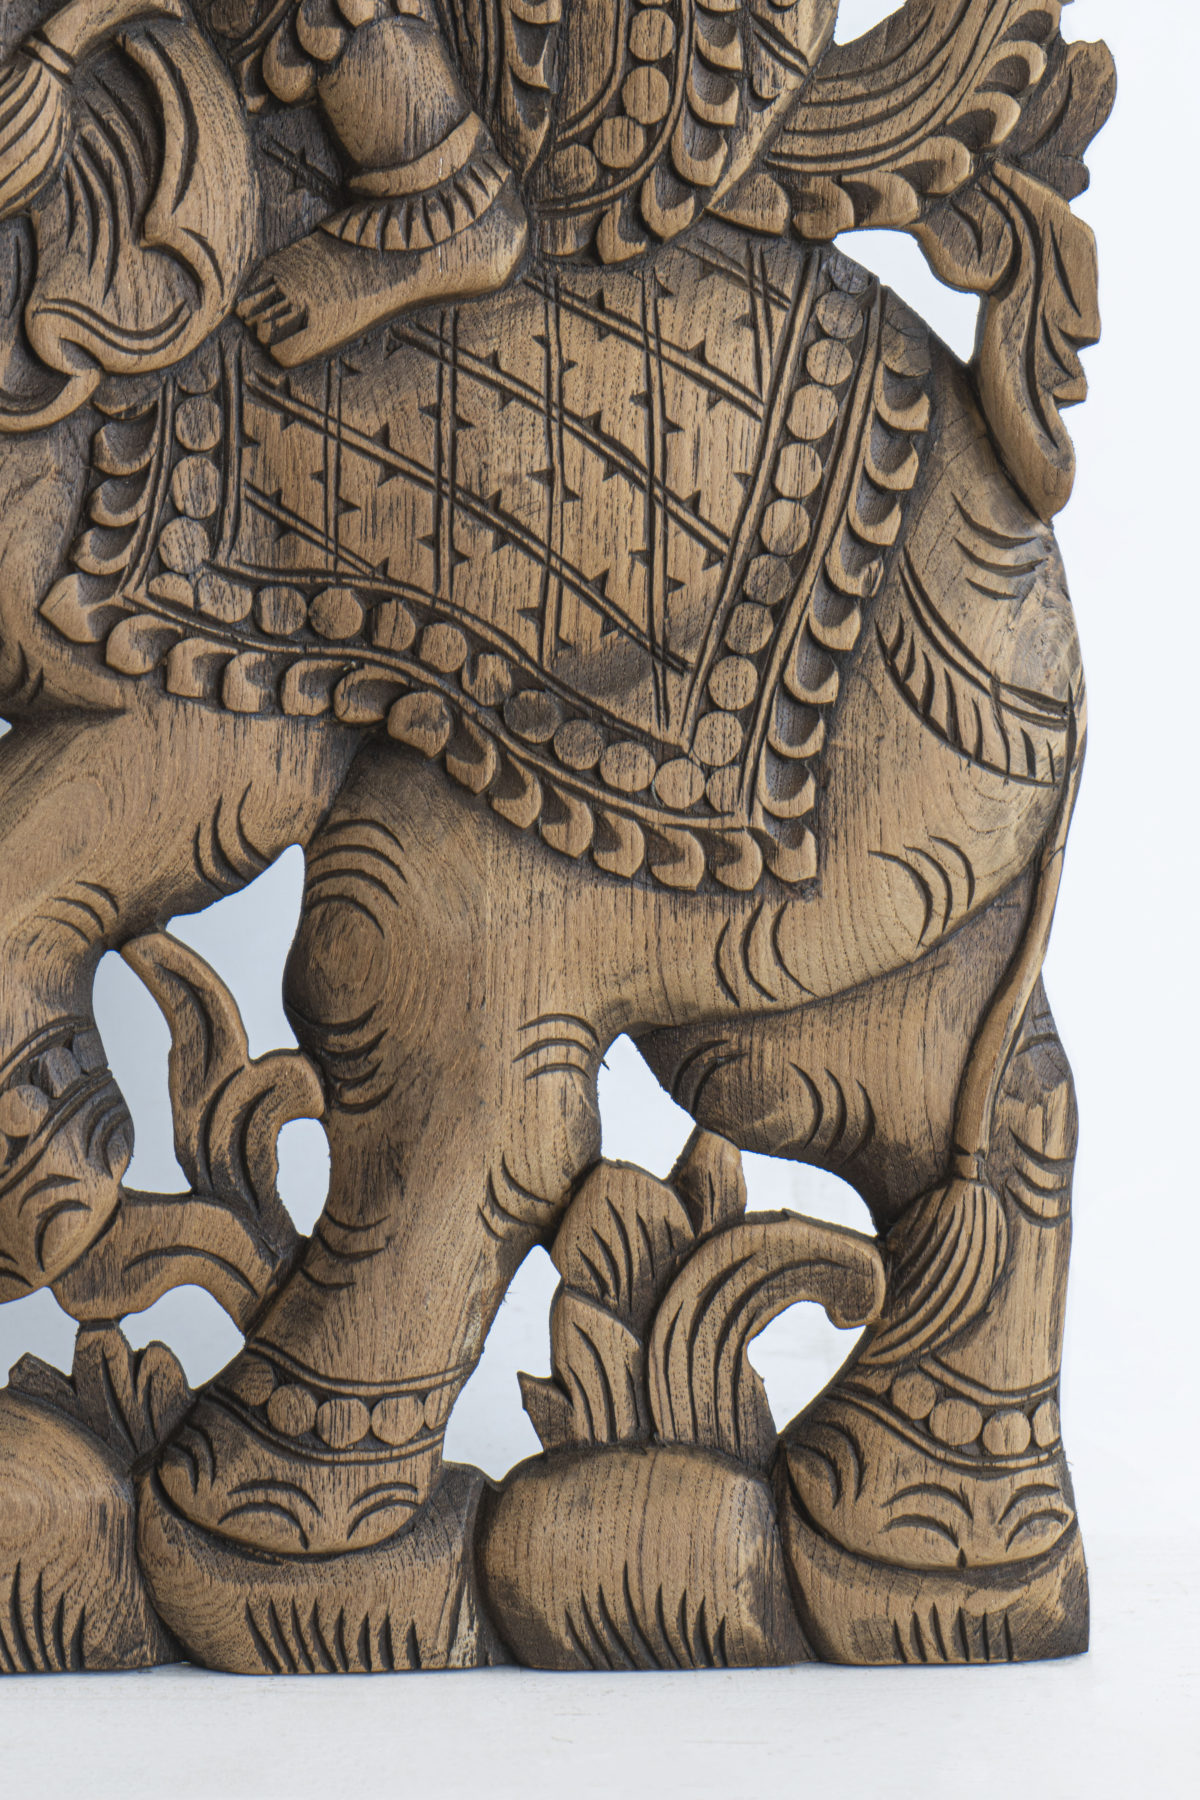 Elephant thai carved on wood